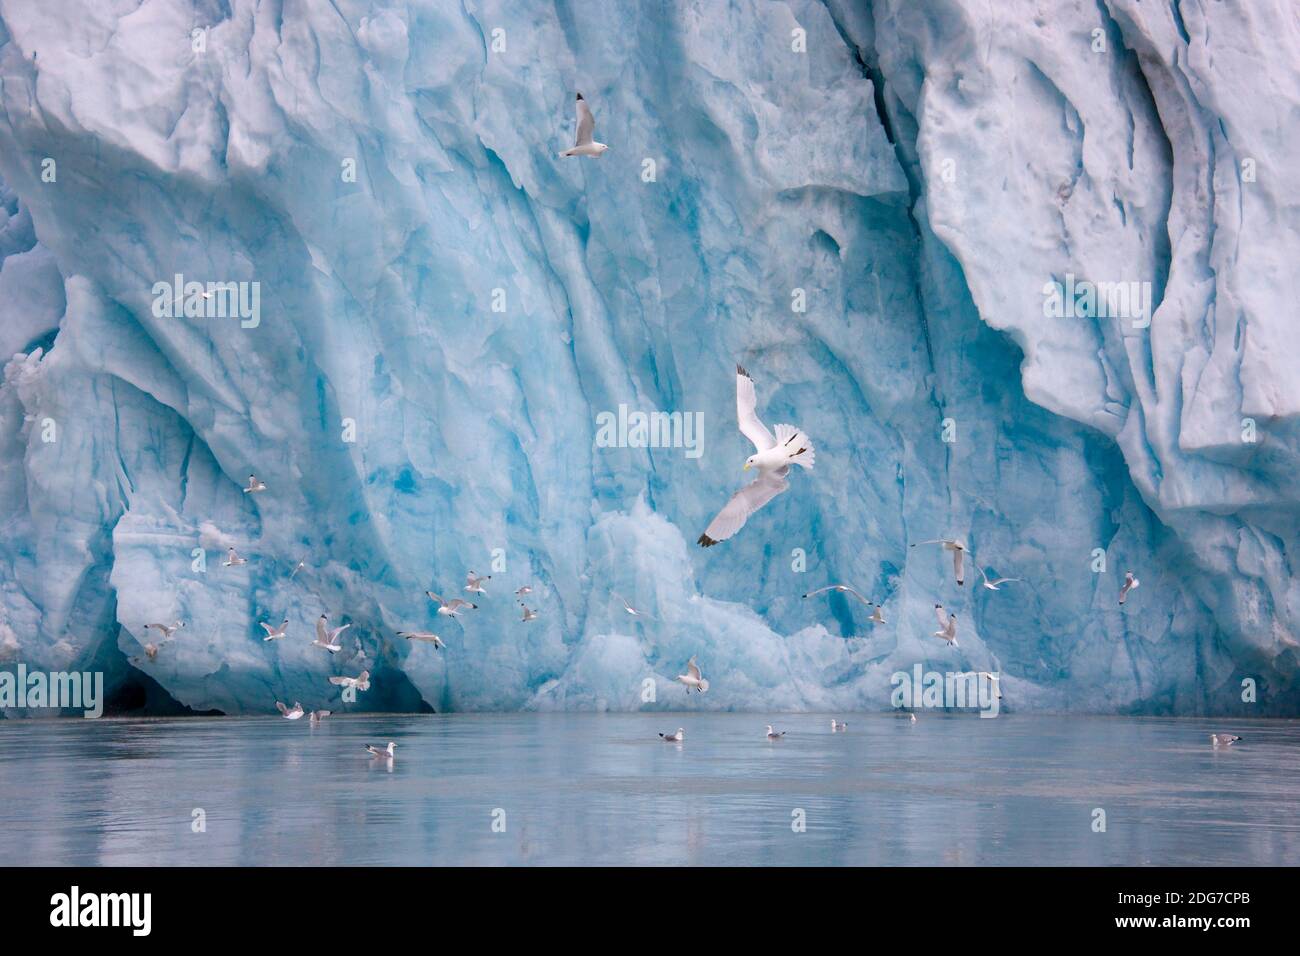 Mouettes avec iceberg dans l'océan Arctique, Spitsbergen, Norvège Banque D'Images